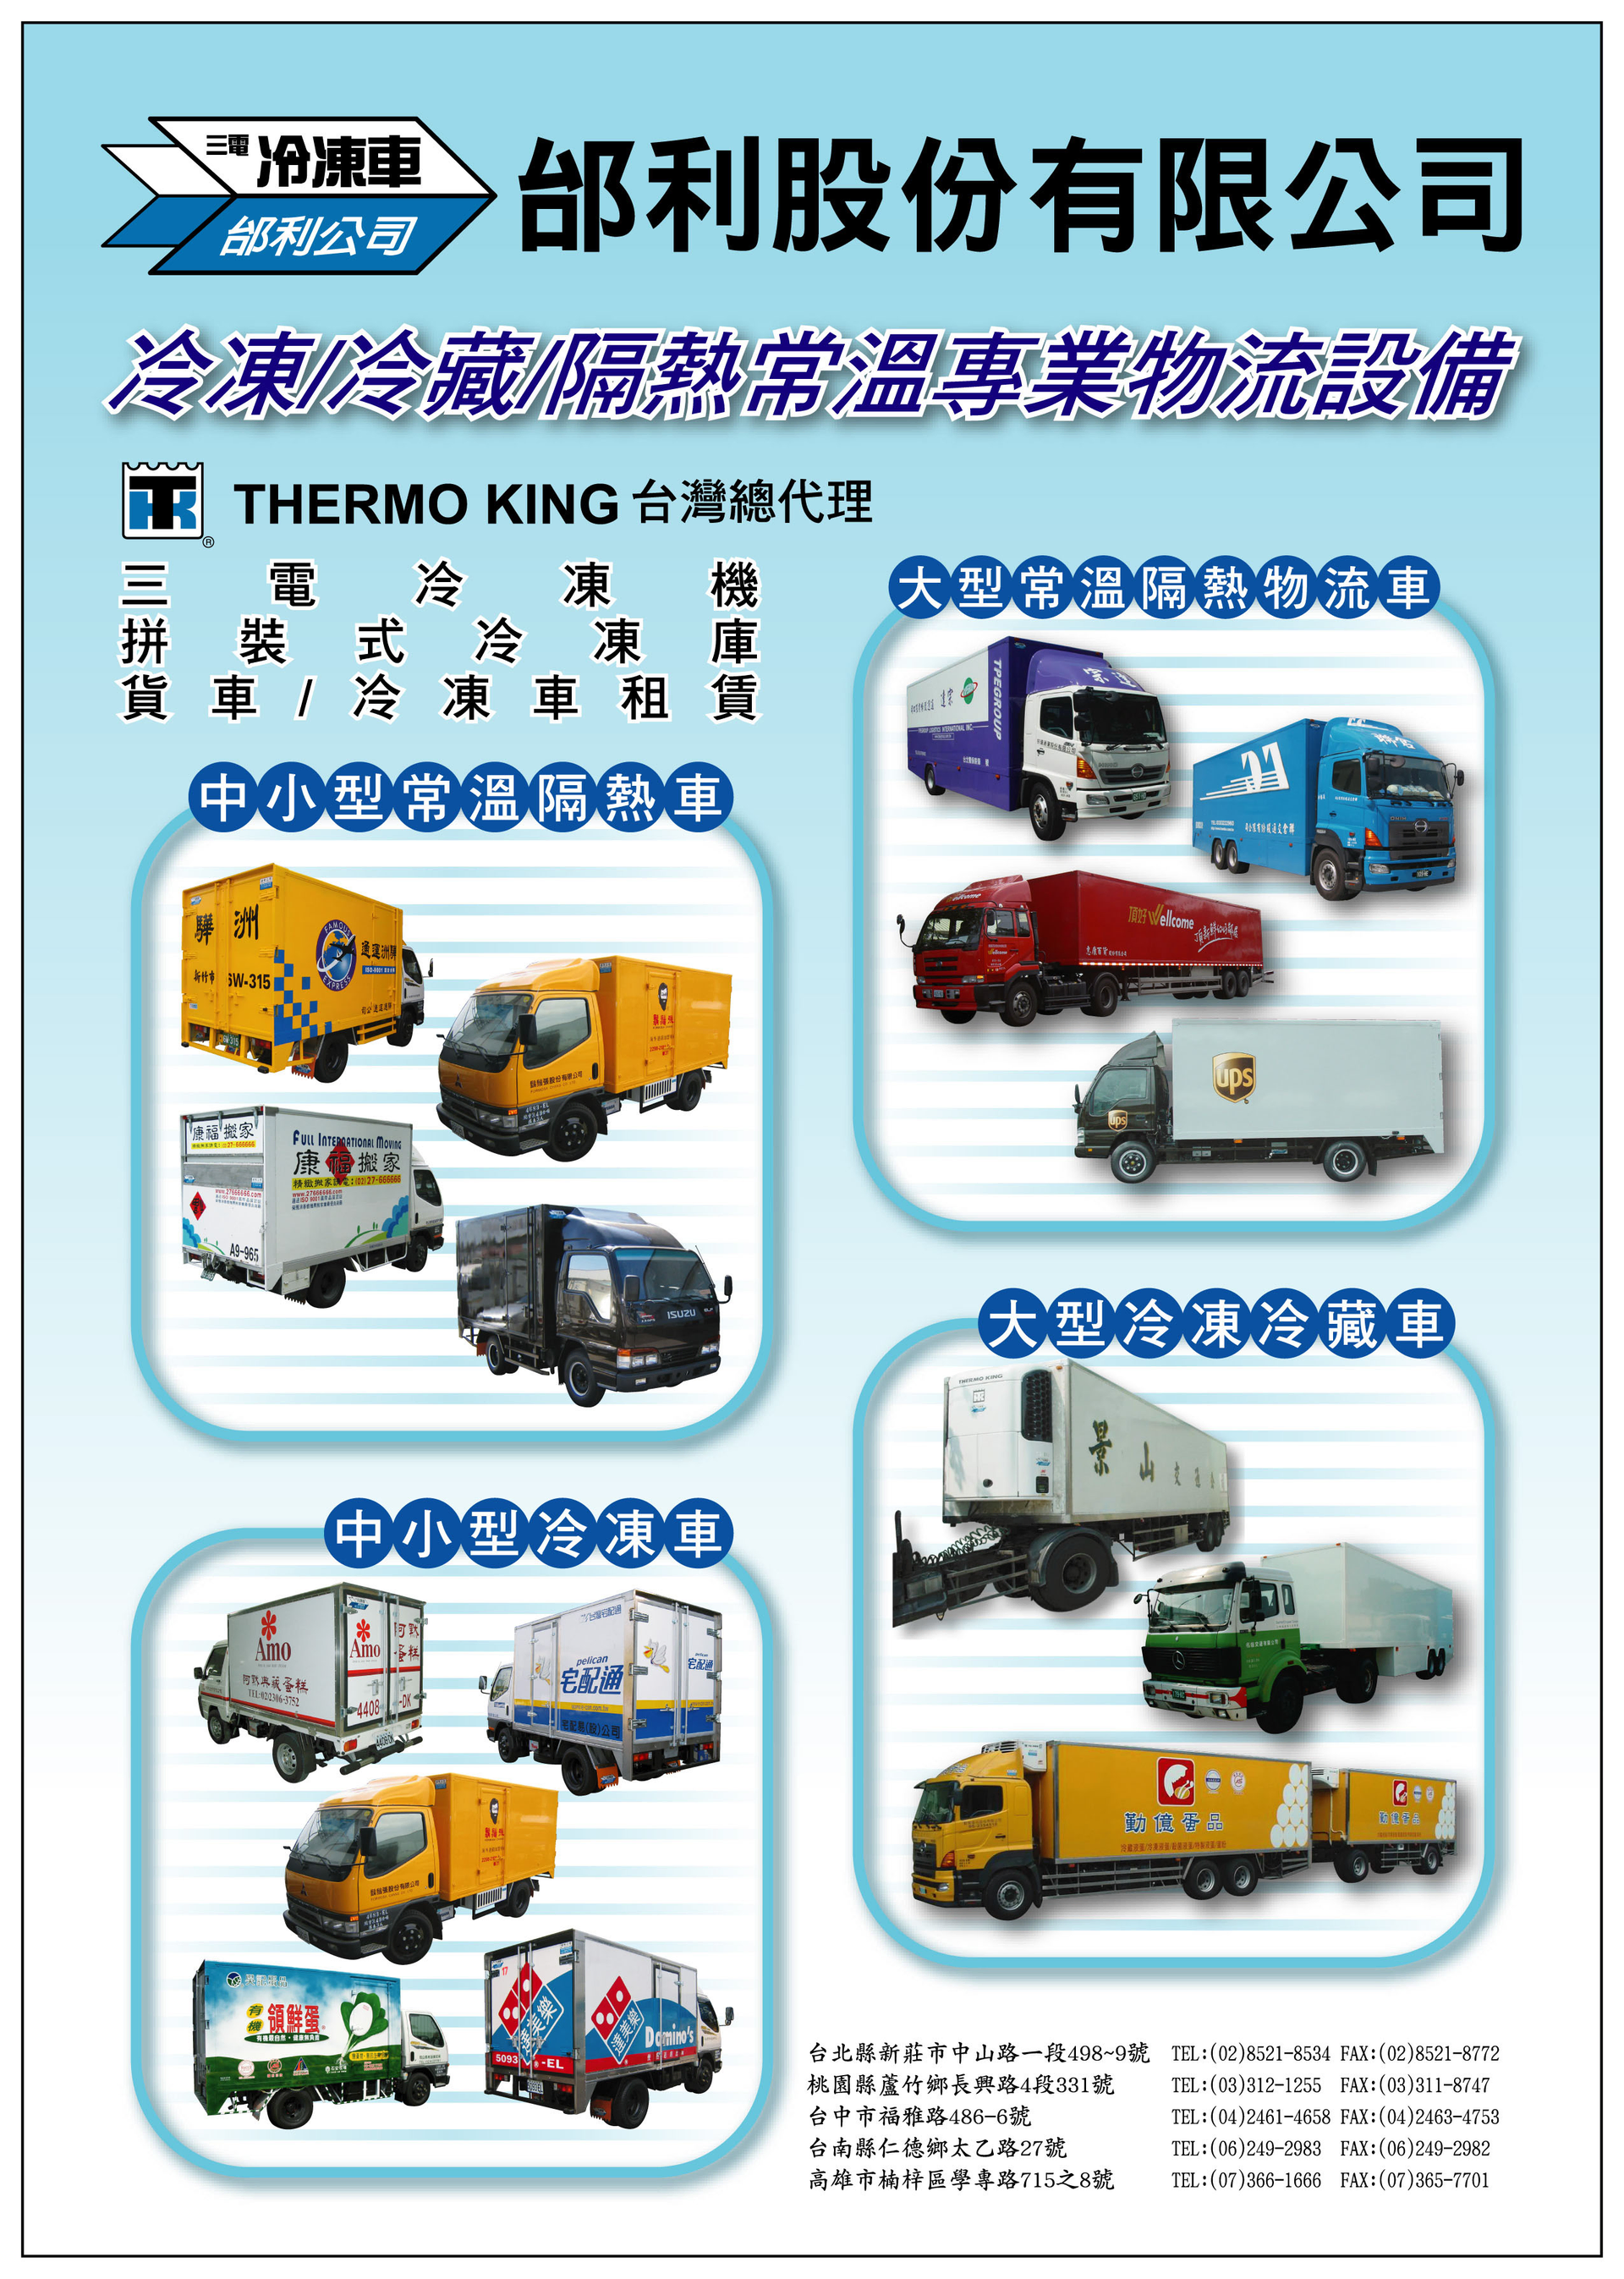 邰利公司 冷凍車 冷藏車 各式車廂 租賃 台灣黃頁詢價平台